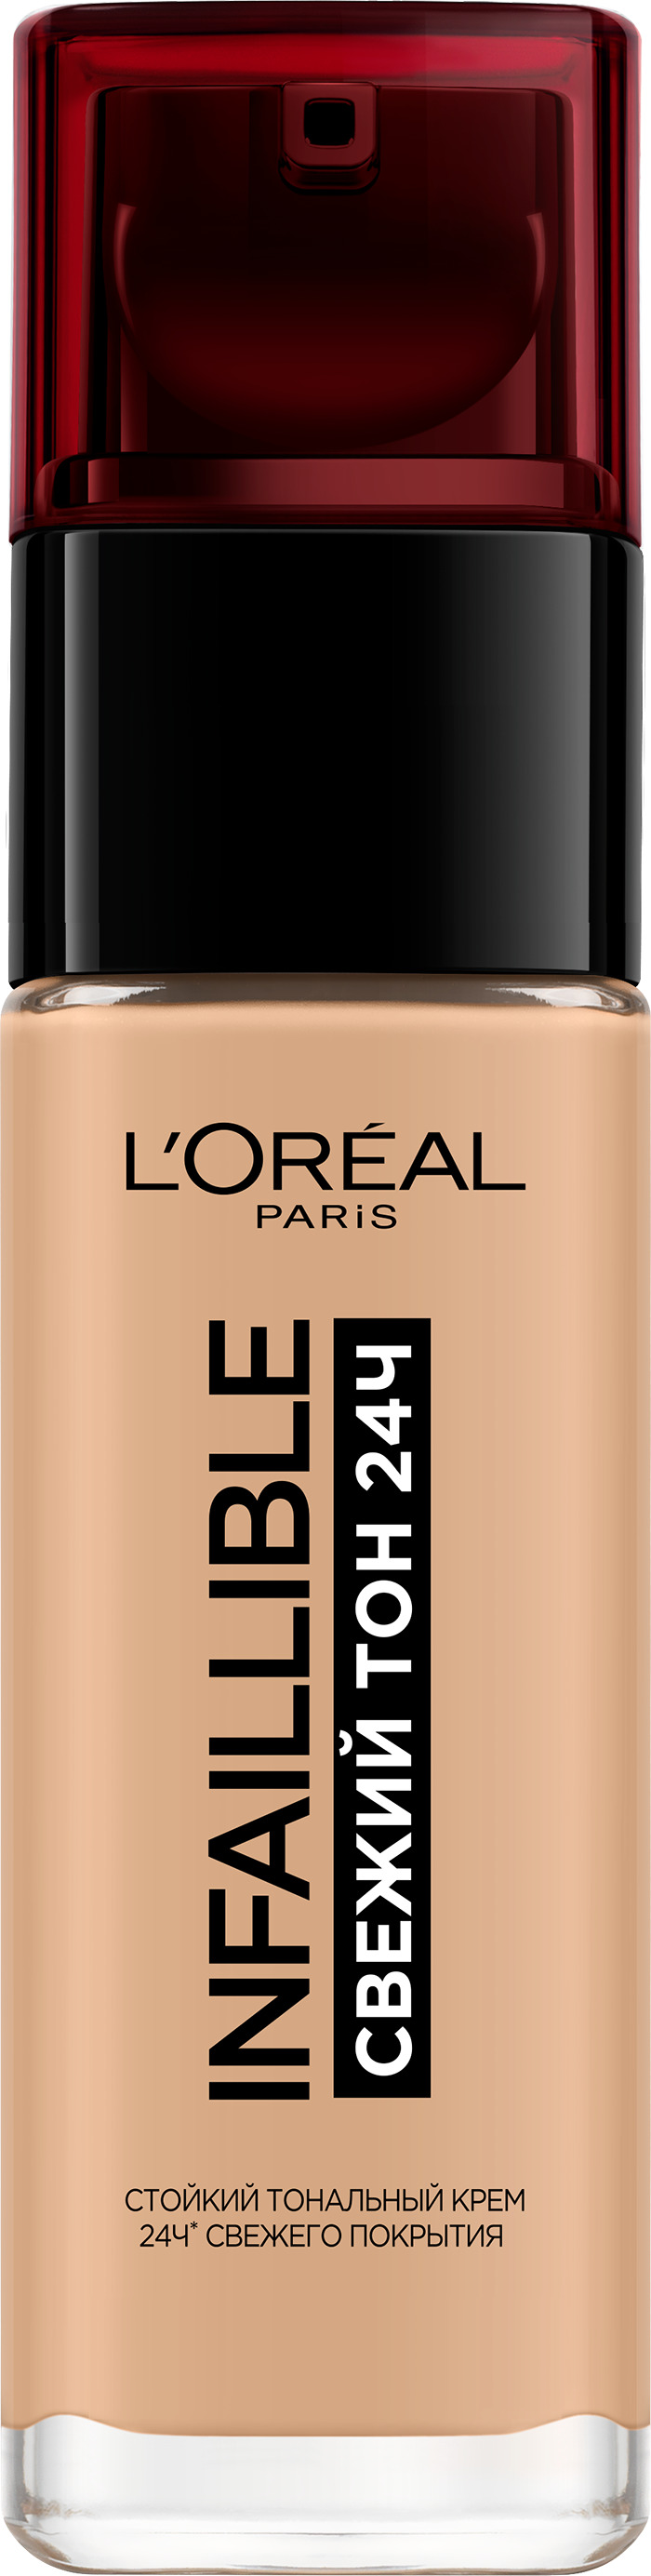 Тональный крем L'Oreal Paris Infaillible стойкий, матирующий тон 200